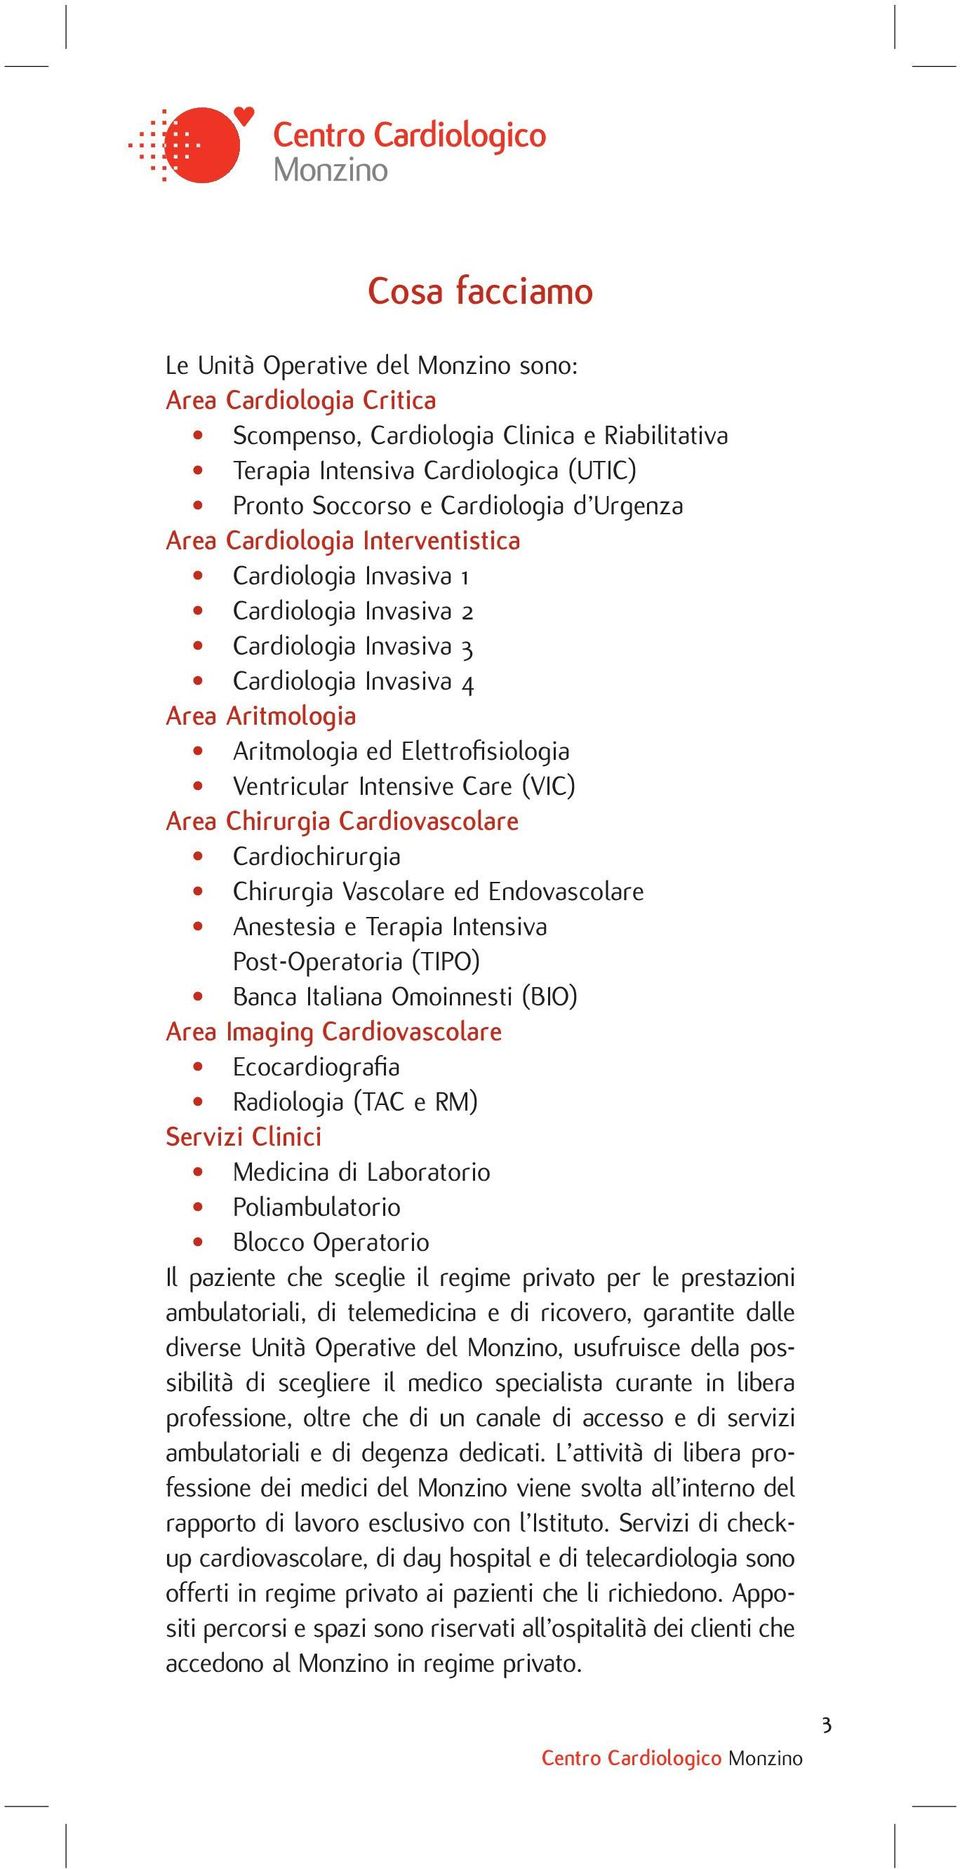 Intensive Care (VIC) Area Chirurgia Cardiovascolare Cardiochirurgia Chirurgia Vascolare ed Endovascolare Anestesia e Terapia Intensiva Post-Operatoria (TIPO) Banca Italiana Omoinnesti (BIO) Area